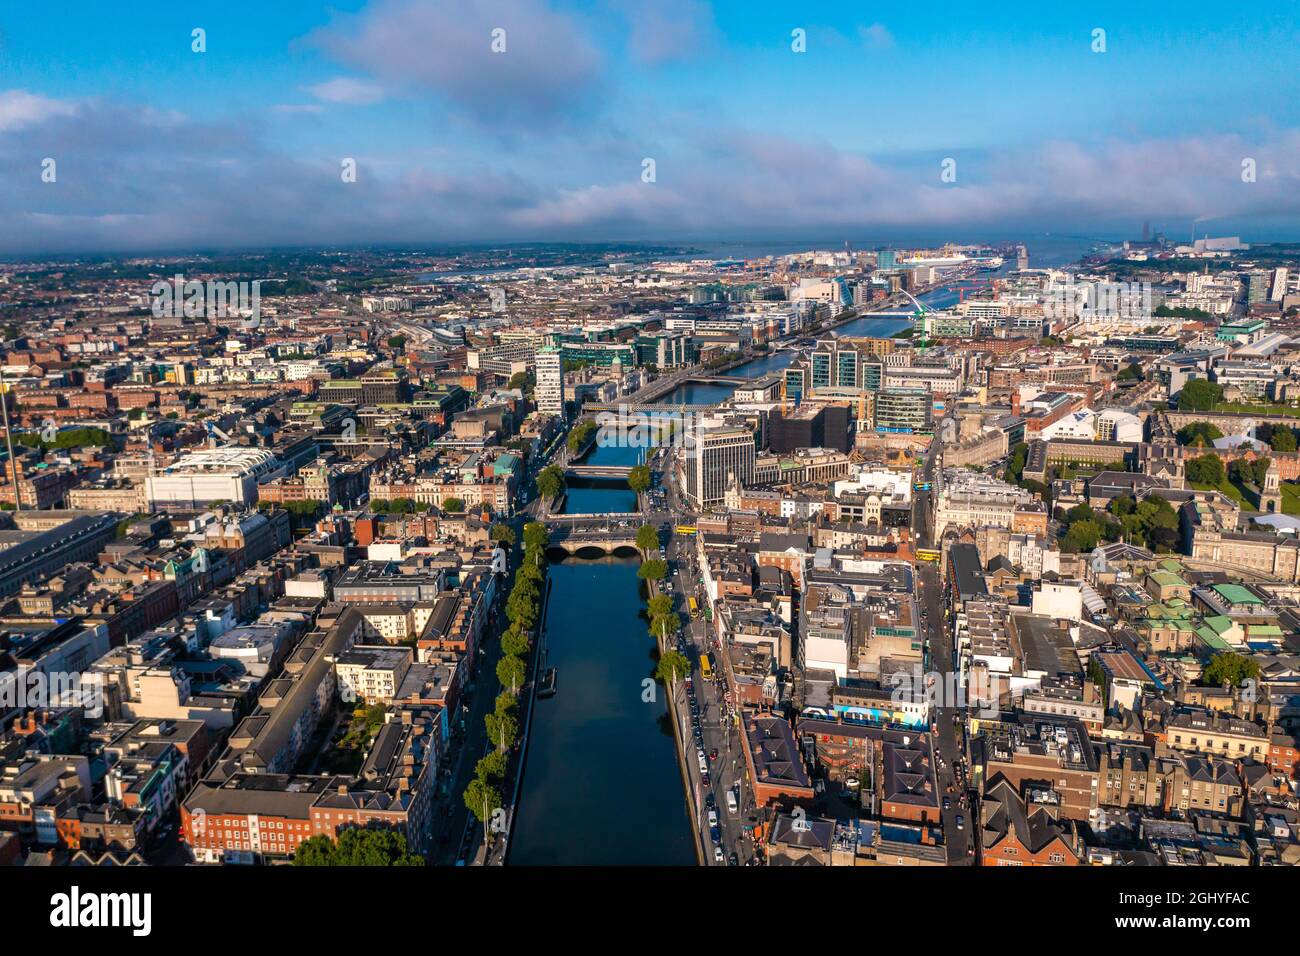 Eine Aufnahme der Skyline von Dublin mit einem Fluss, der an einem bewölkten Tag durch eine Brücke fließt, die zwei Seiten der Straße verbindet und von Gebäuden umgeben ist Stockfoto